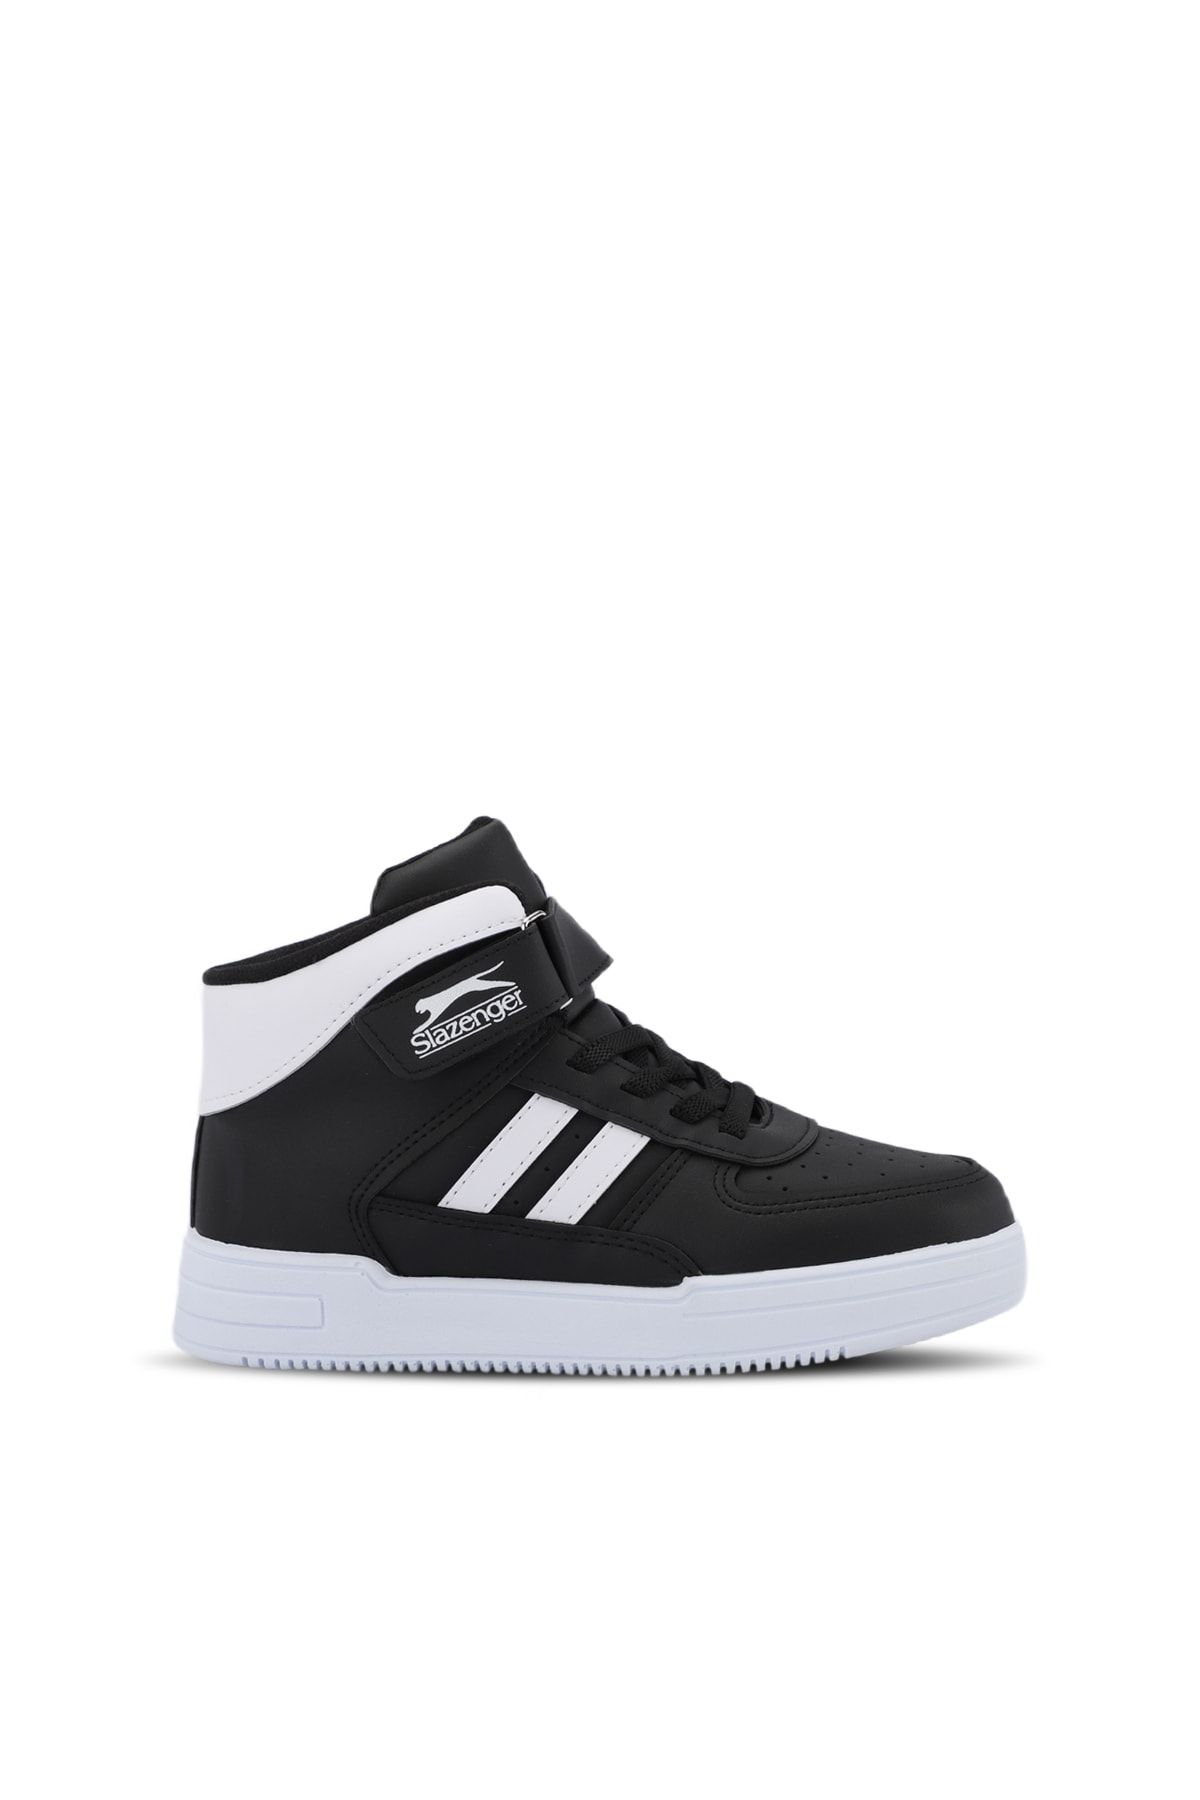 Slazenger NICOLA I Sneaker Erkek Çocuk Ayakkabı Siyah / Beyaz